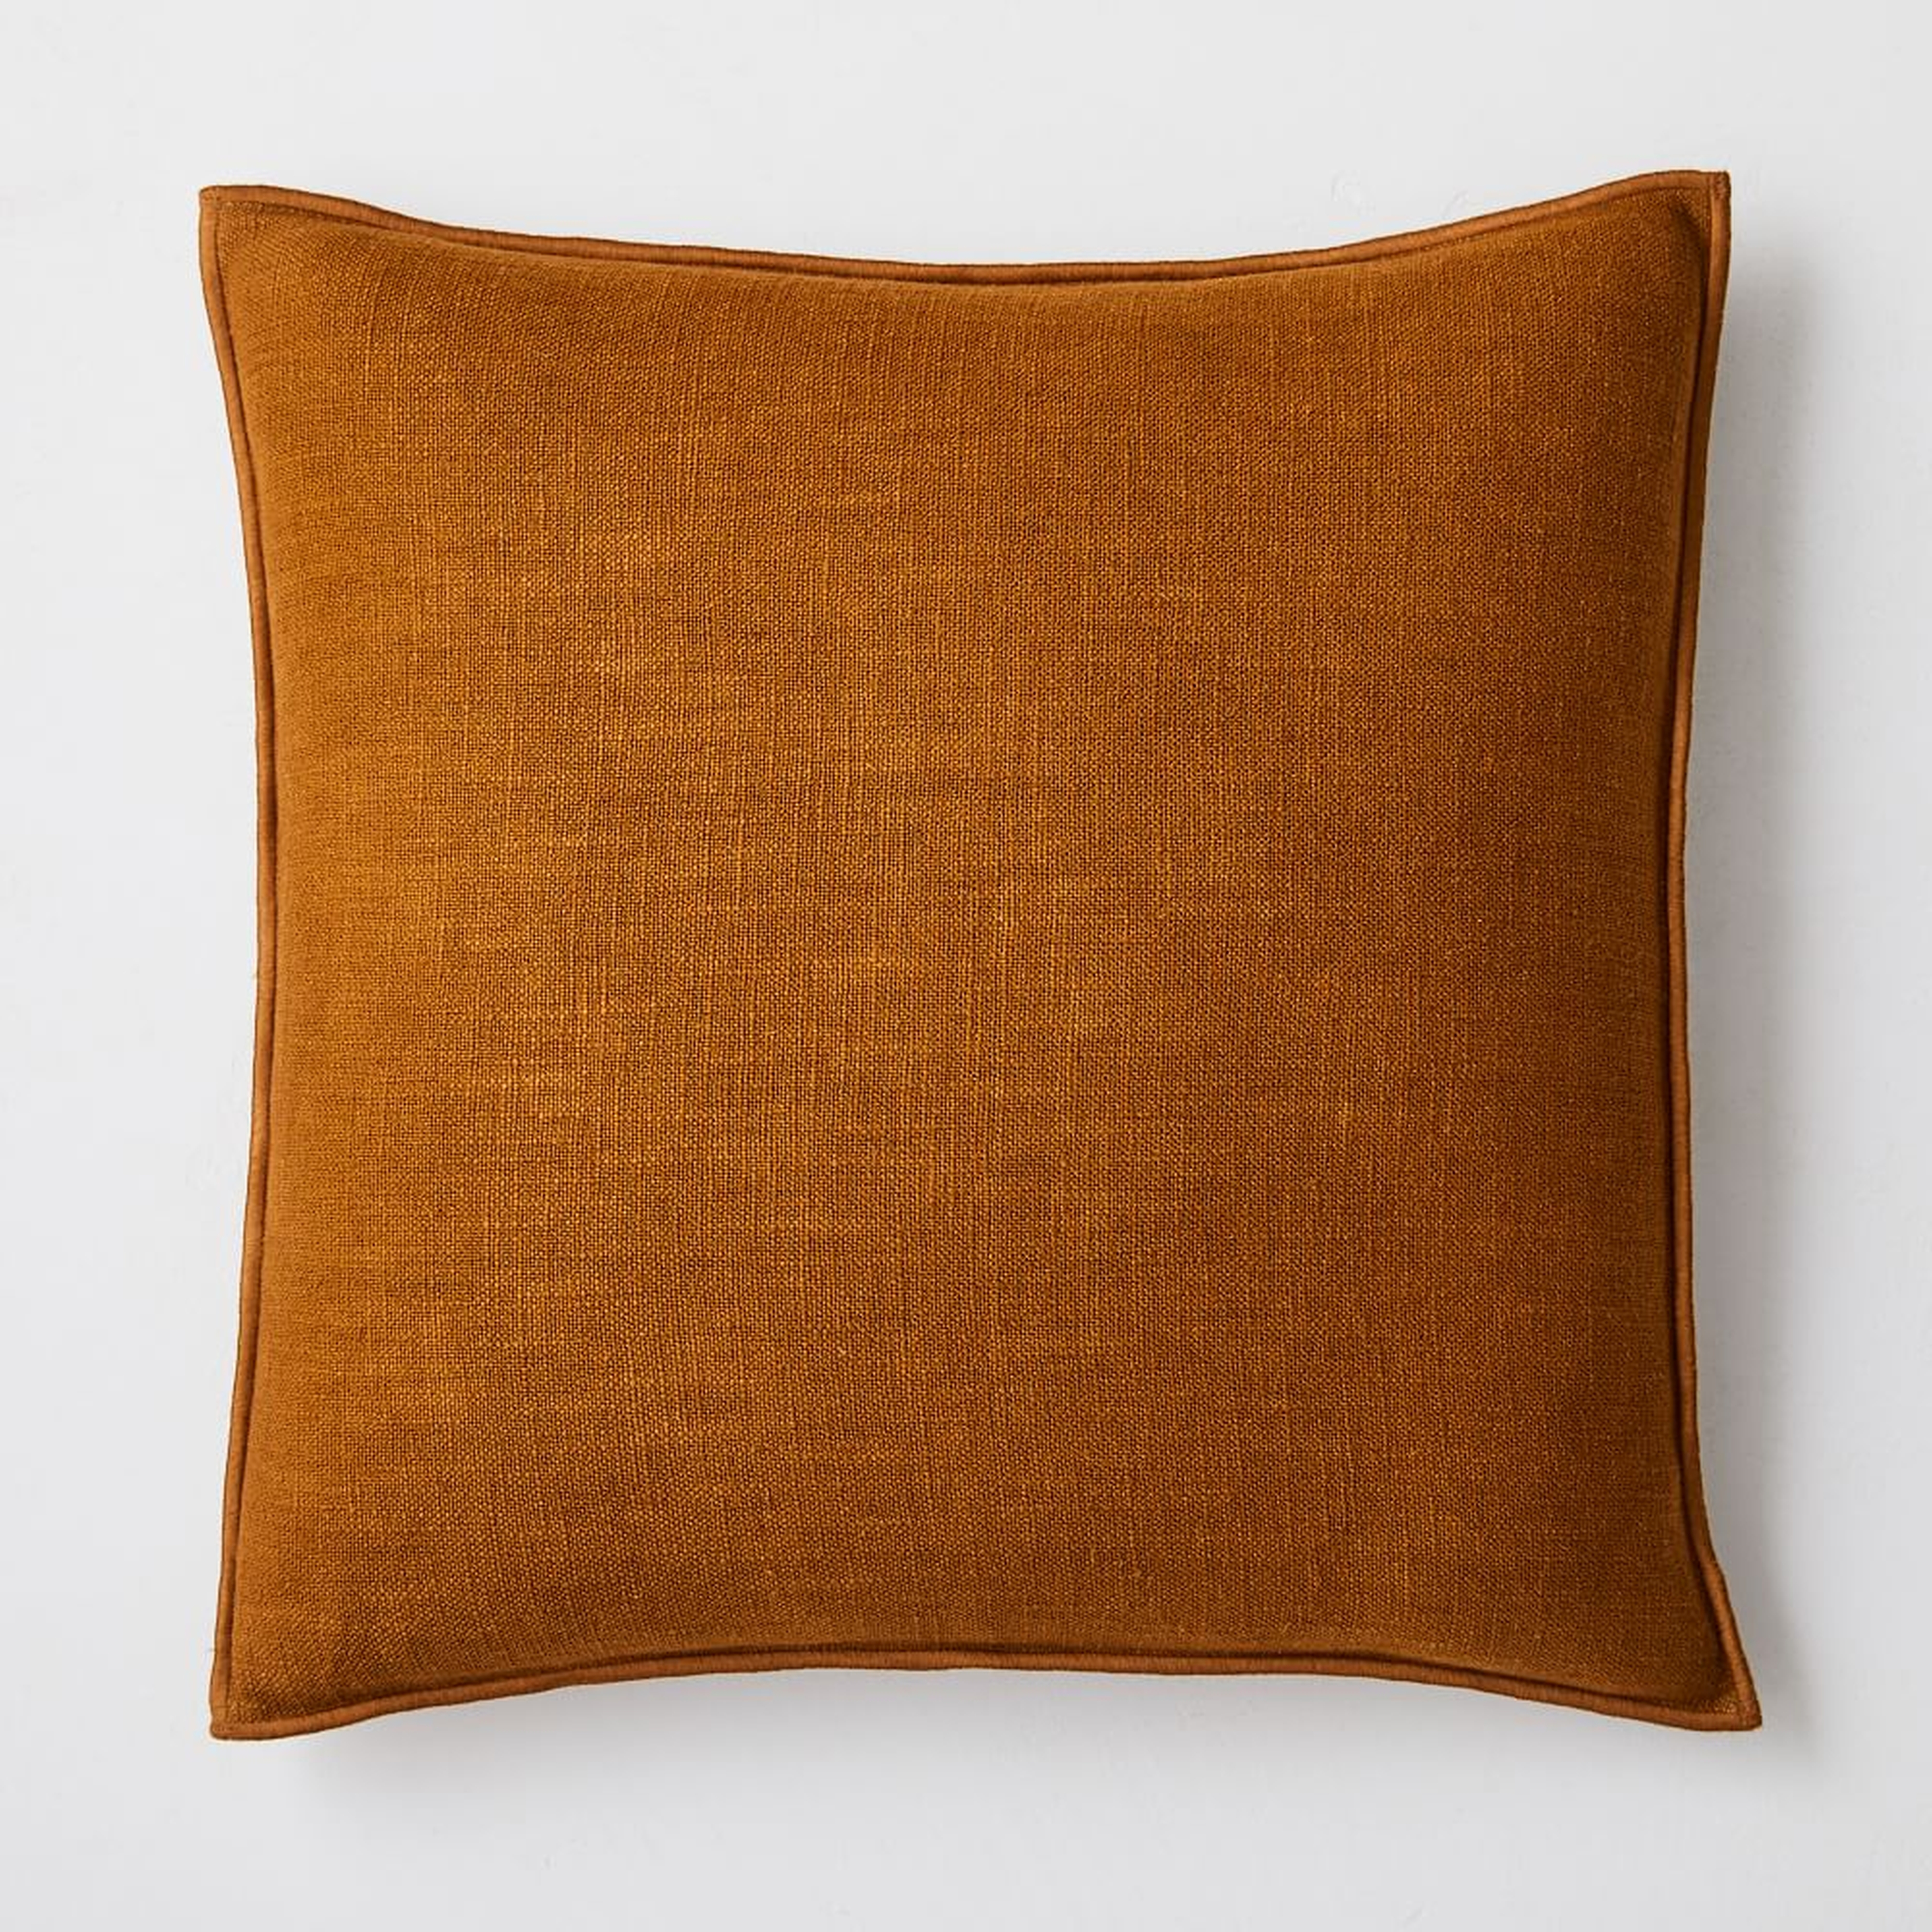 Classic Linen Pillow Cover, 20"x20", Golden Oak - West Elm